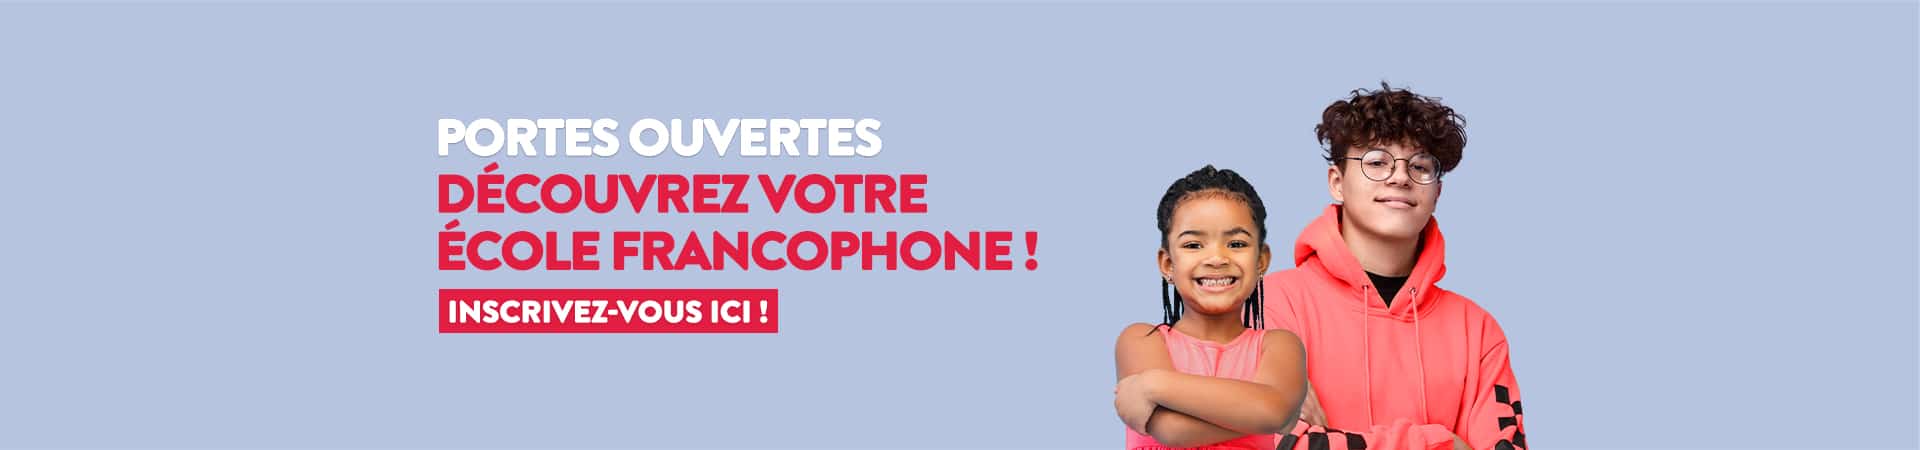 Portes ouvertes : Découvrez votre école francophone